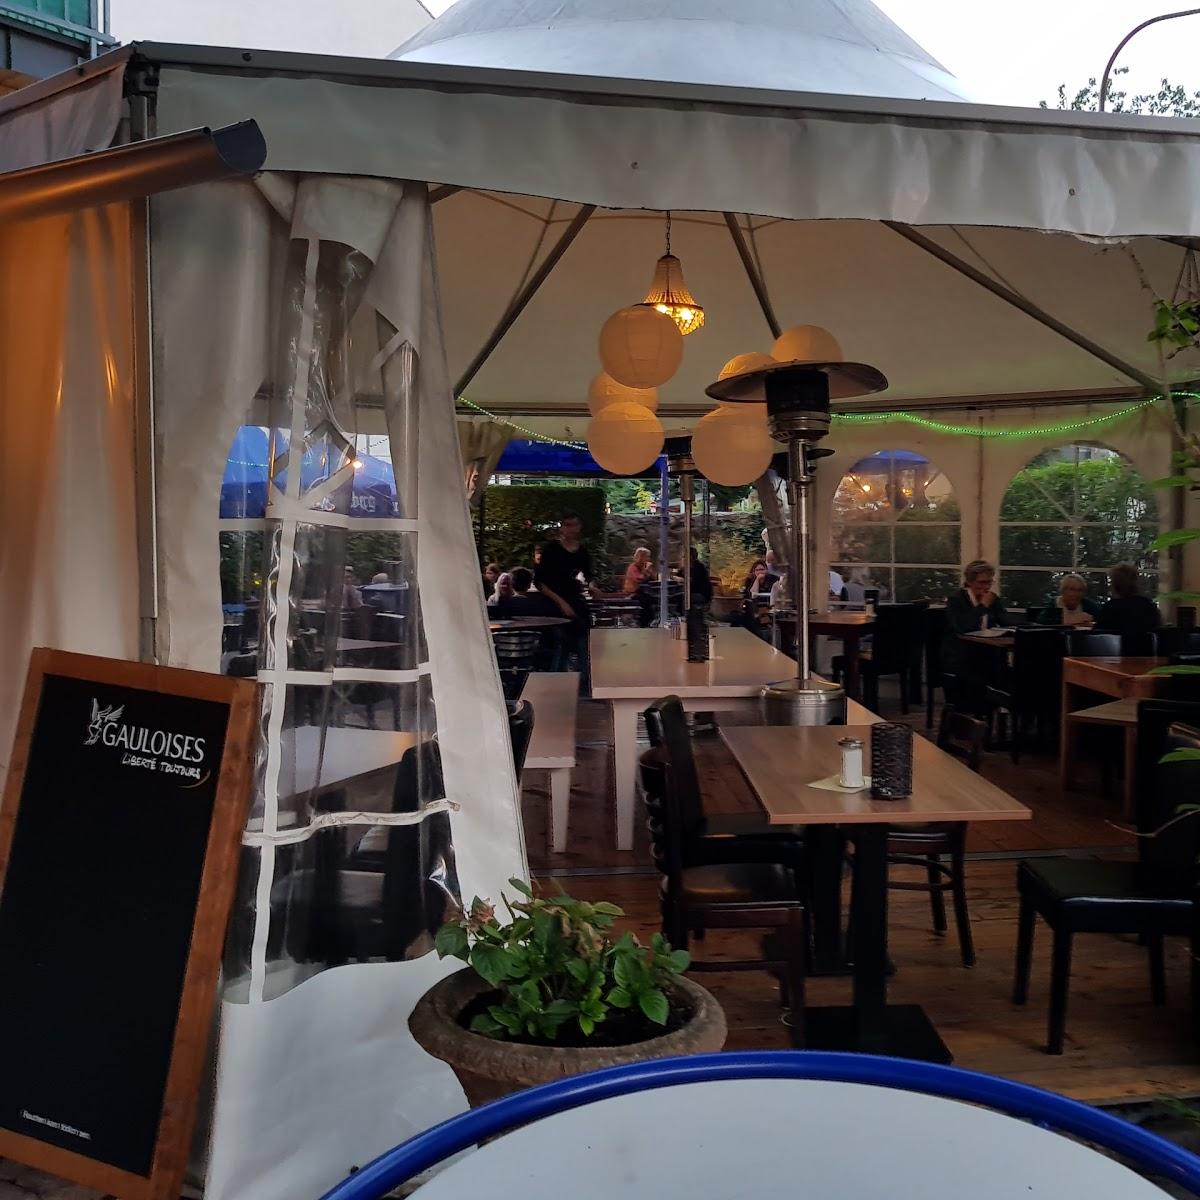 Restaurant "Gaststätte Paradies" in Freiburg im Breisgau